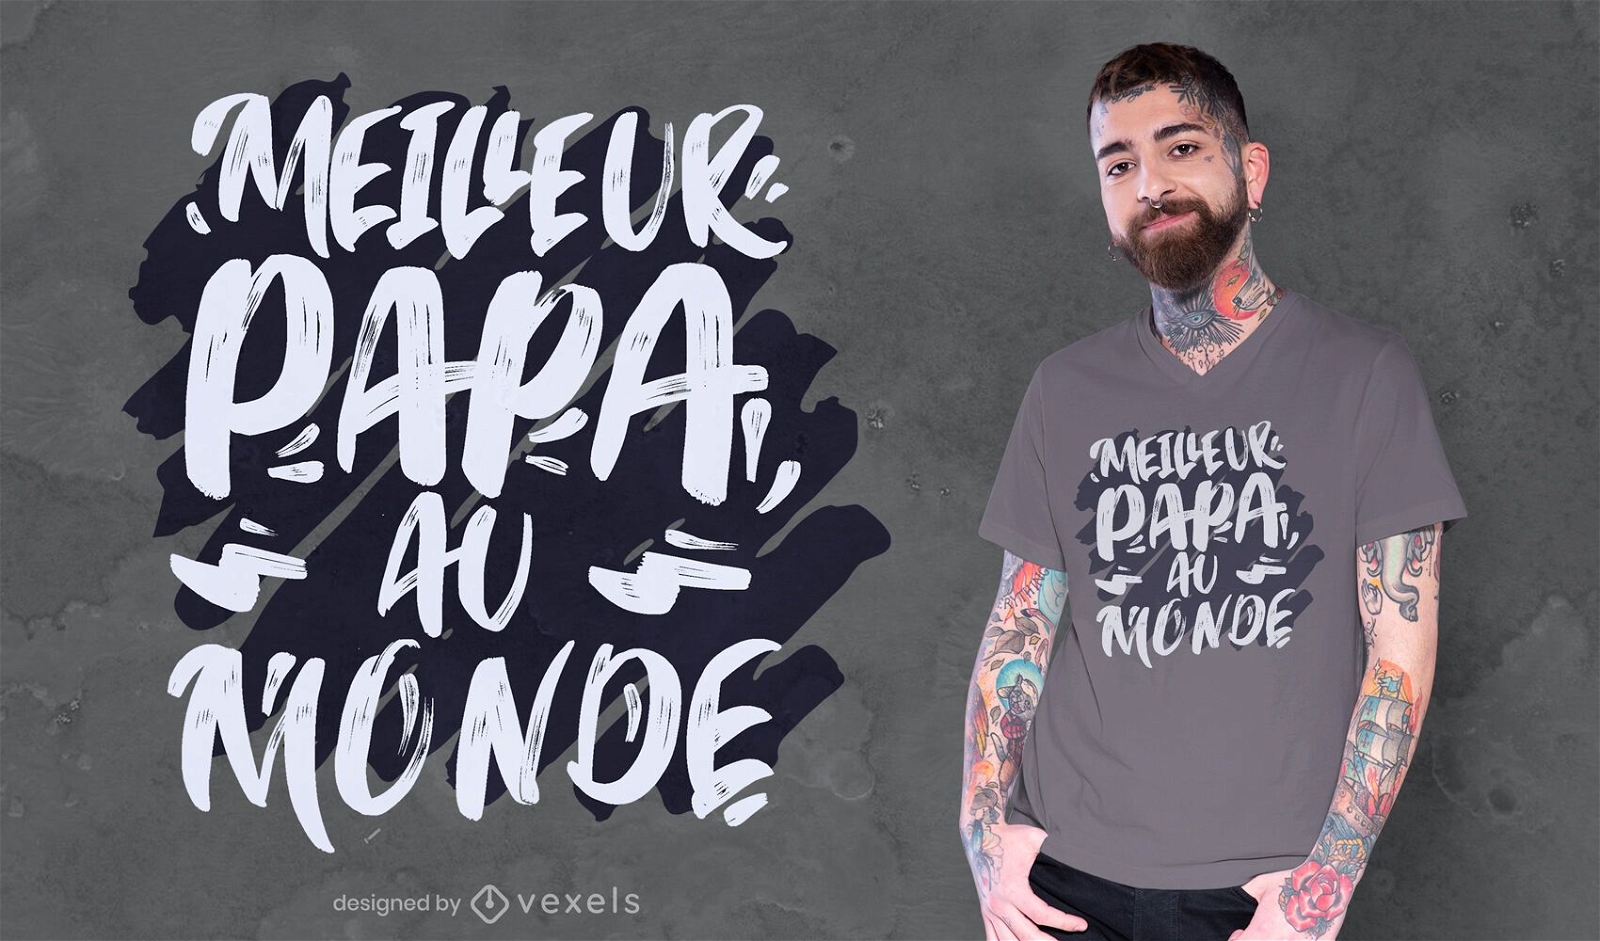 Melhor design de t-shirt de cita??o francesa para o pai